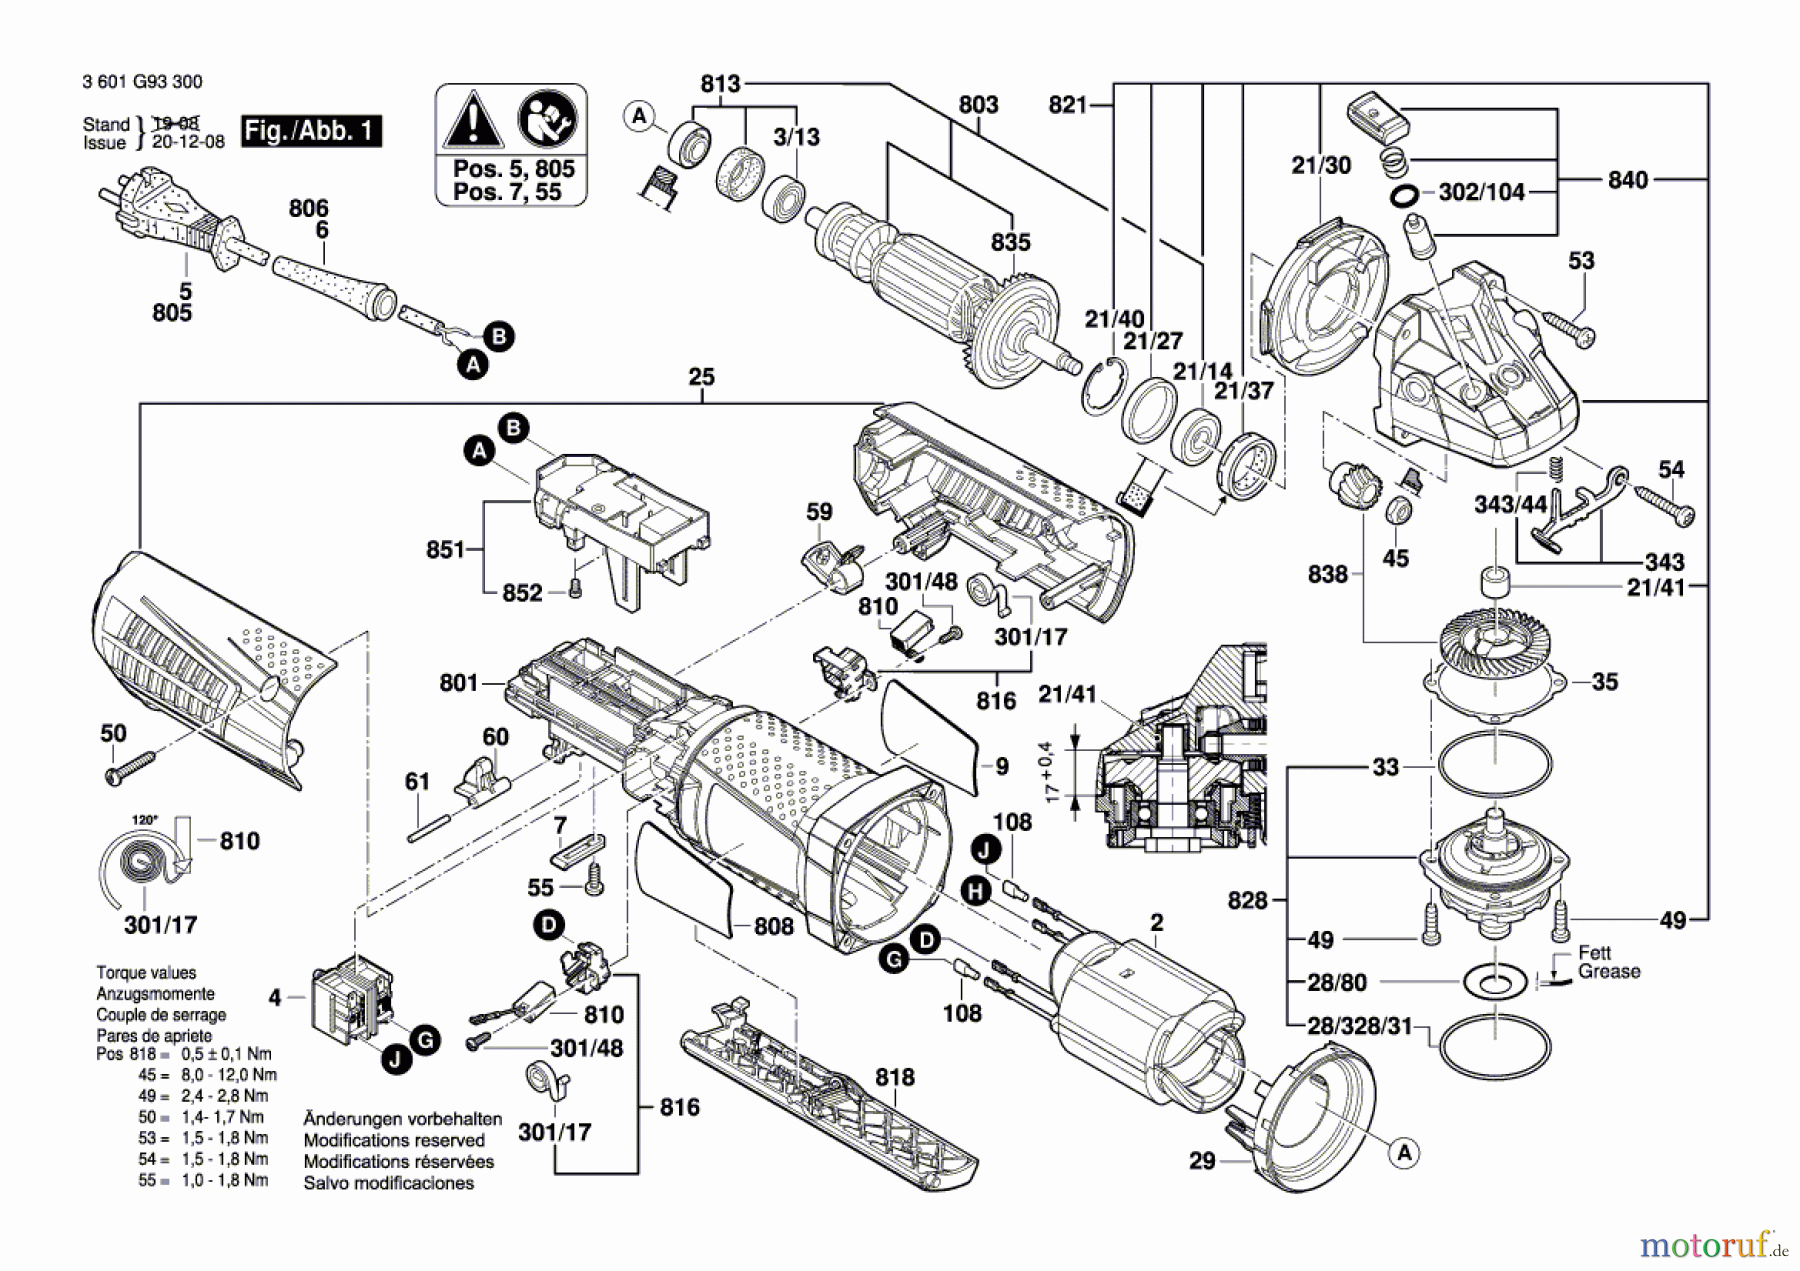  Bosch Werkzeug Winkelschleifer GWS 15-125 CIPX Seite 1